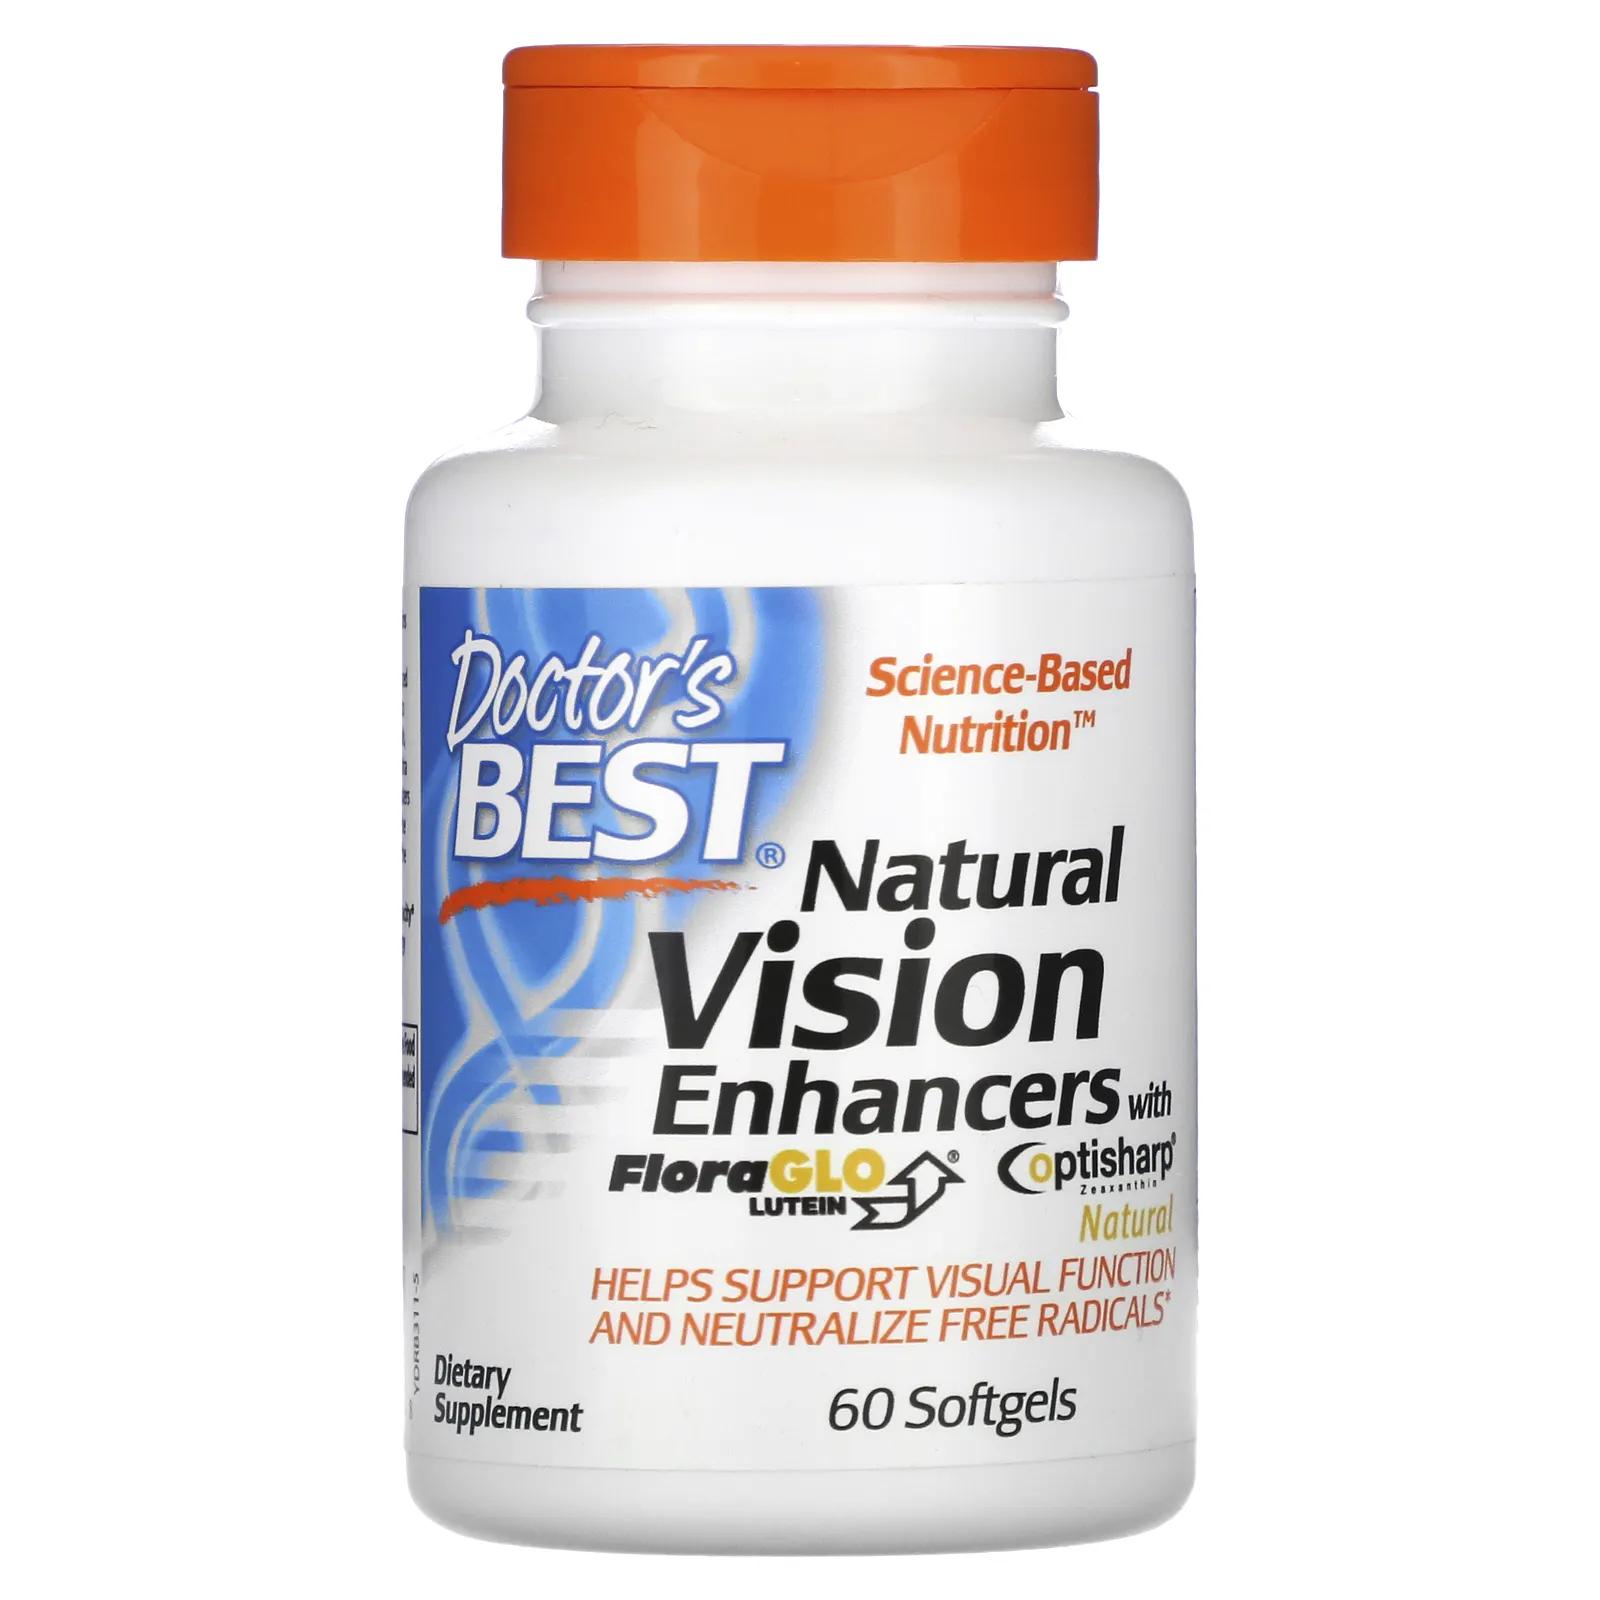 Doctor's Best Натуральное средство для улучшения зрения с лютеином FloraGlo 60 мягких таблеток натуральное средство для улучшения зрения с лютеином floraglo doctor s best 60 капсул